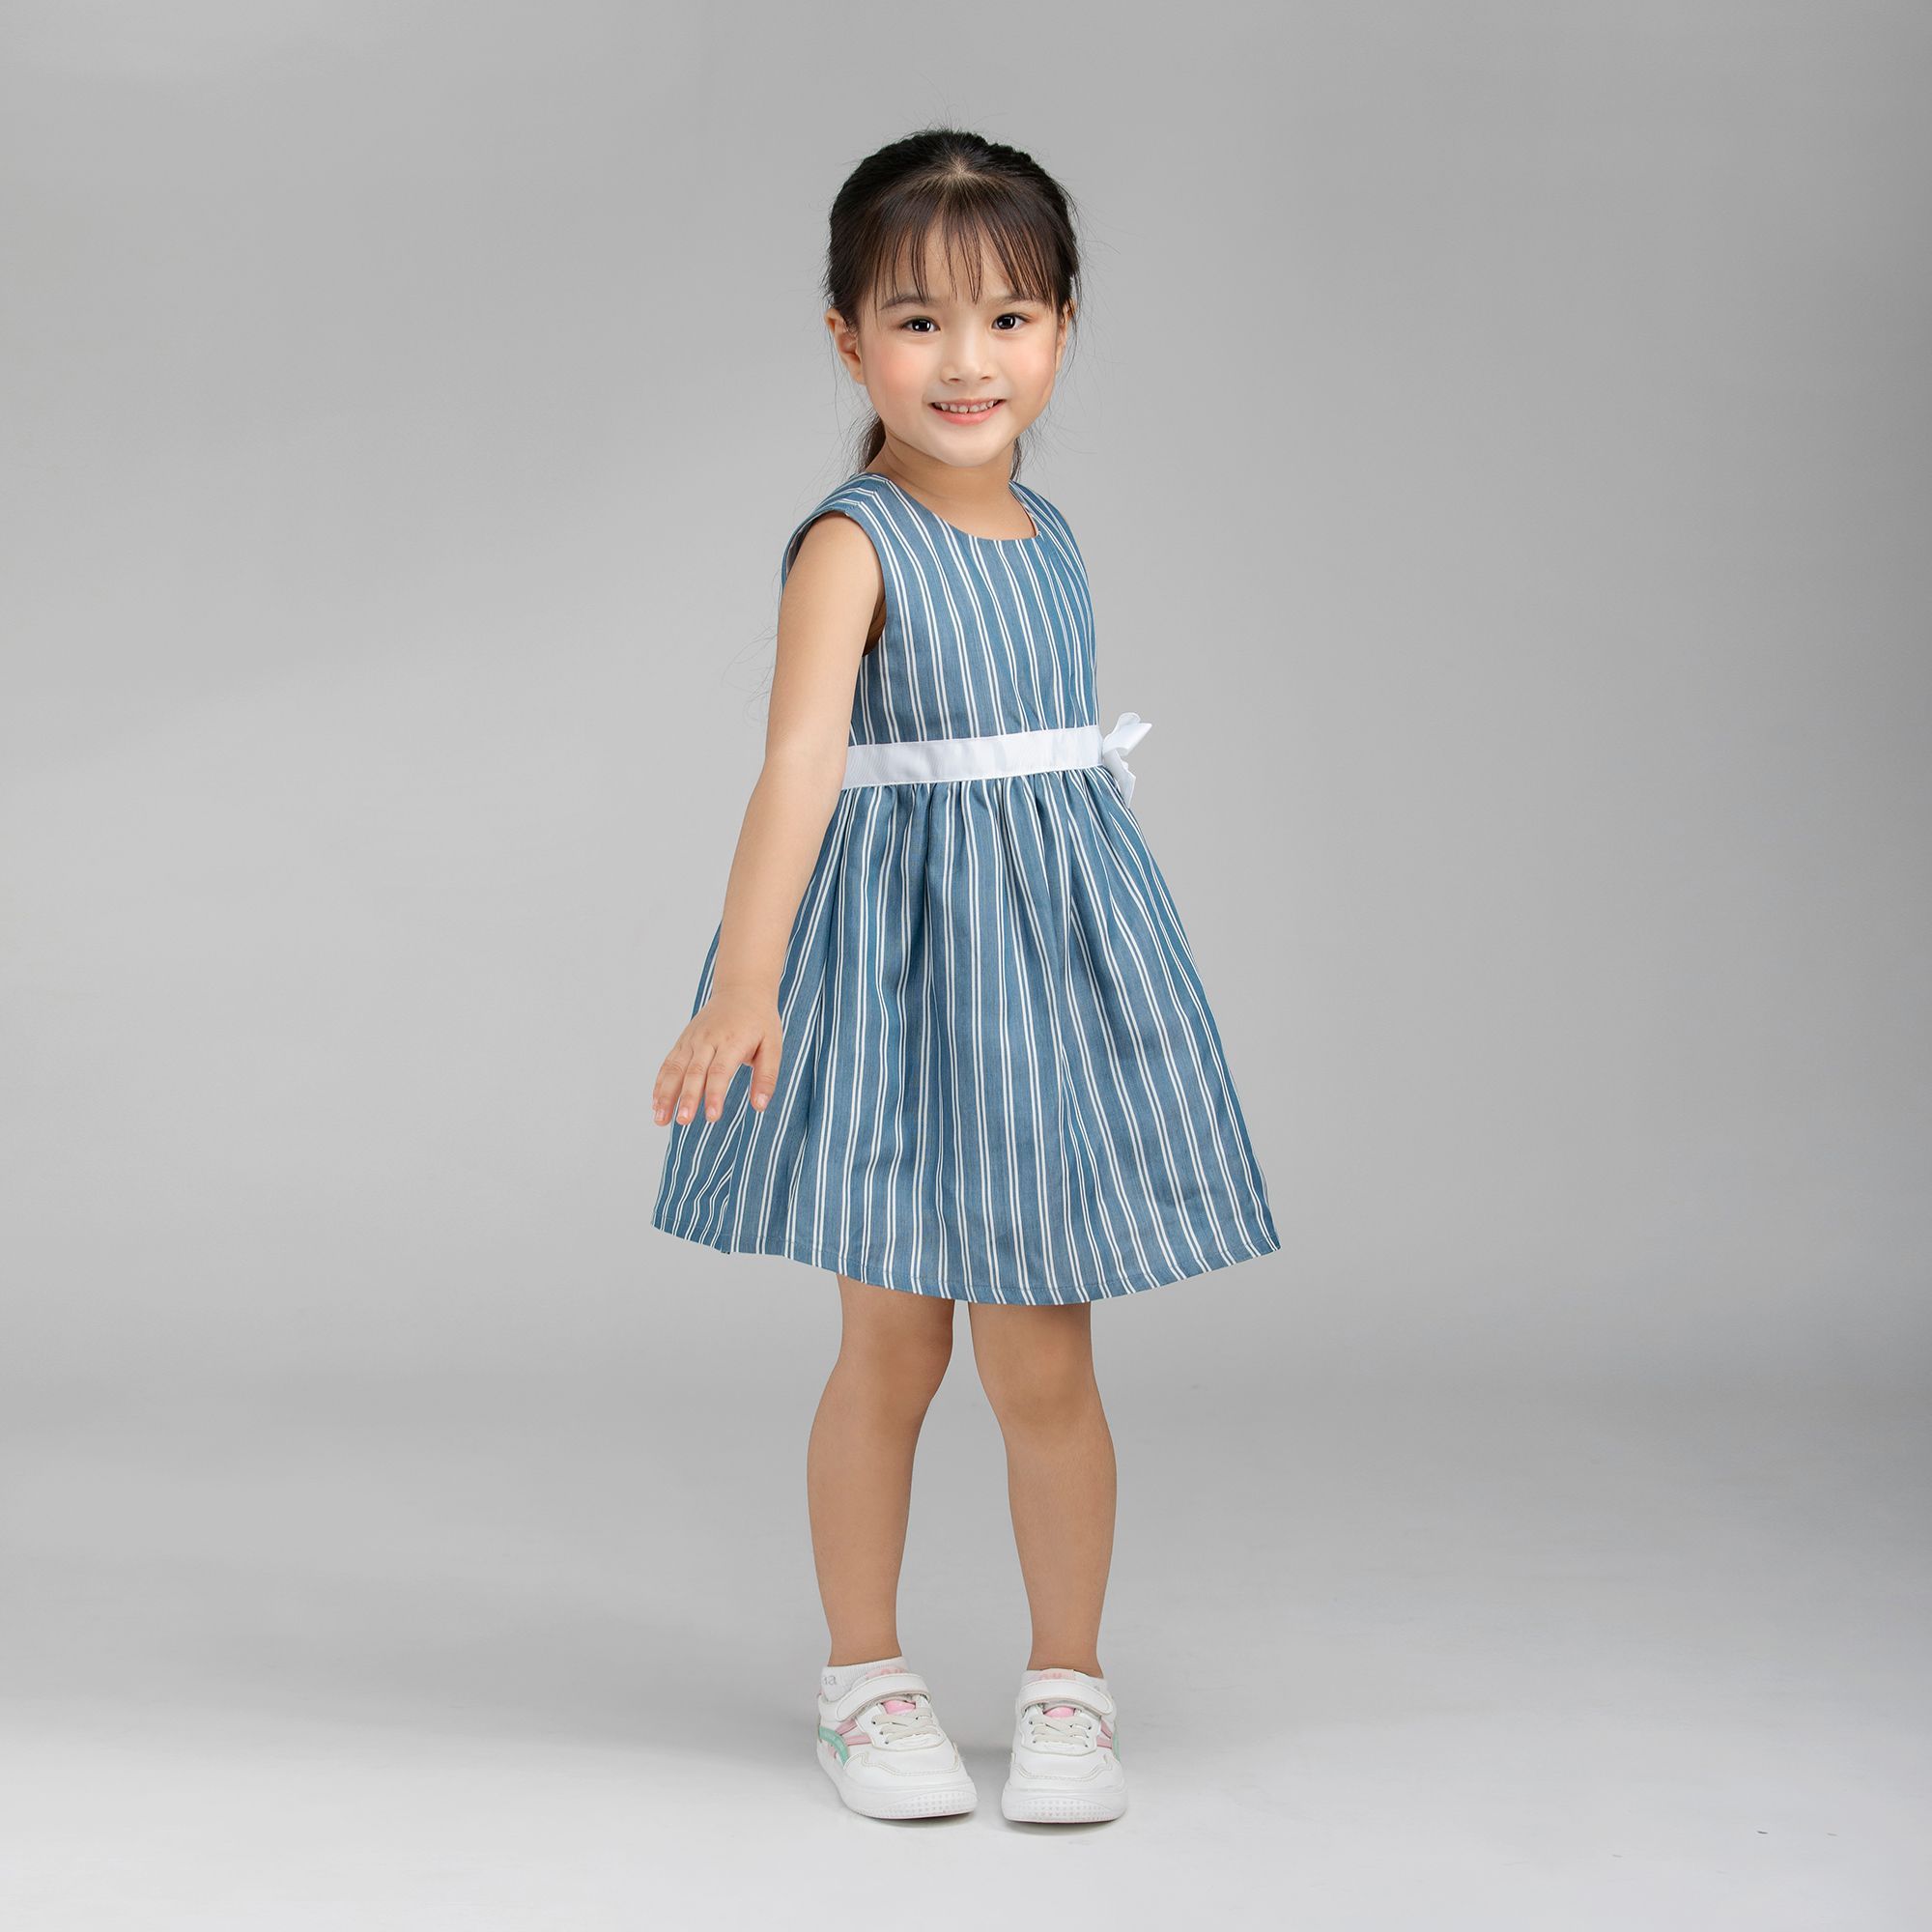 Set 2 dây kèm chân váy trắng cho bé gái size 100-150(4-8 tuổi) rẻ đẹp cho bé